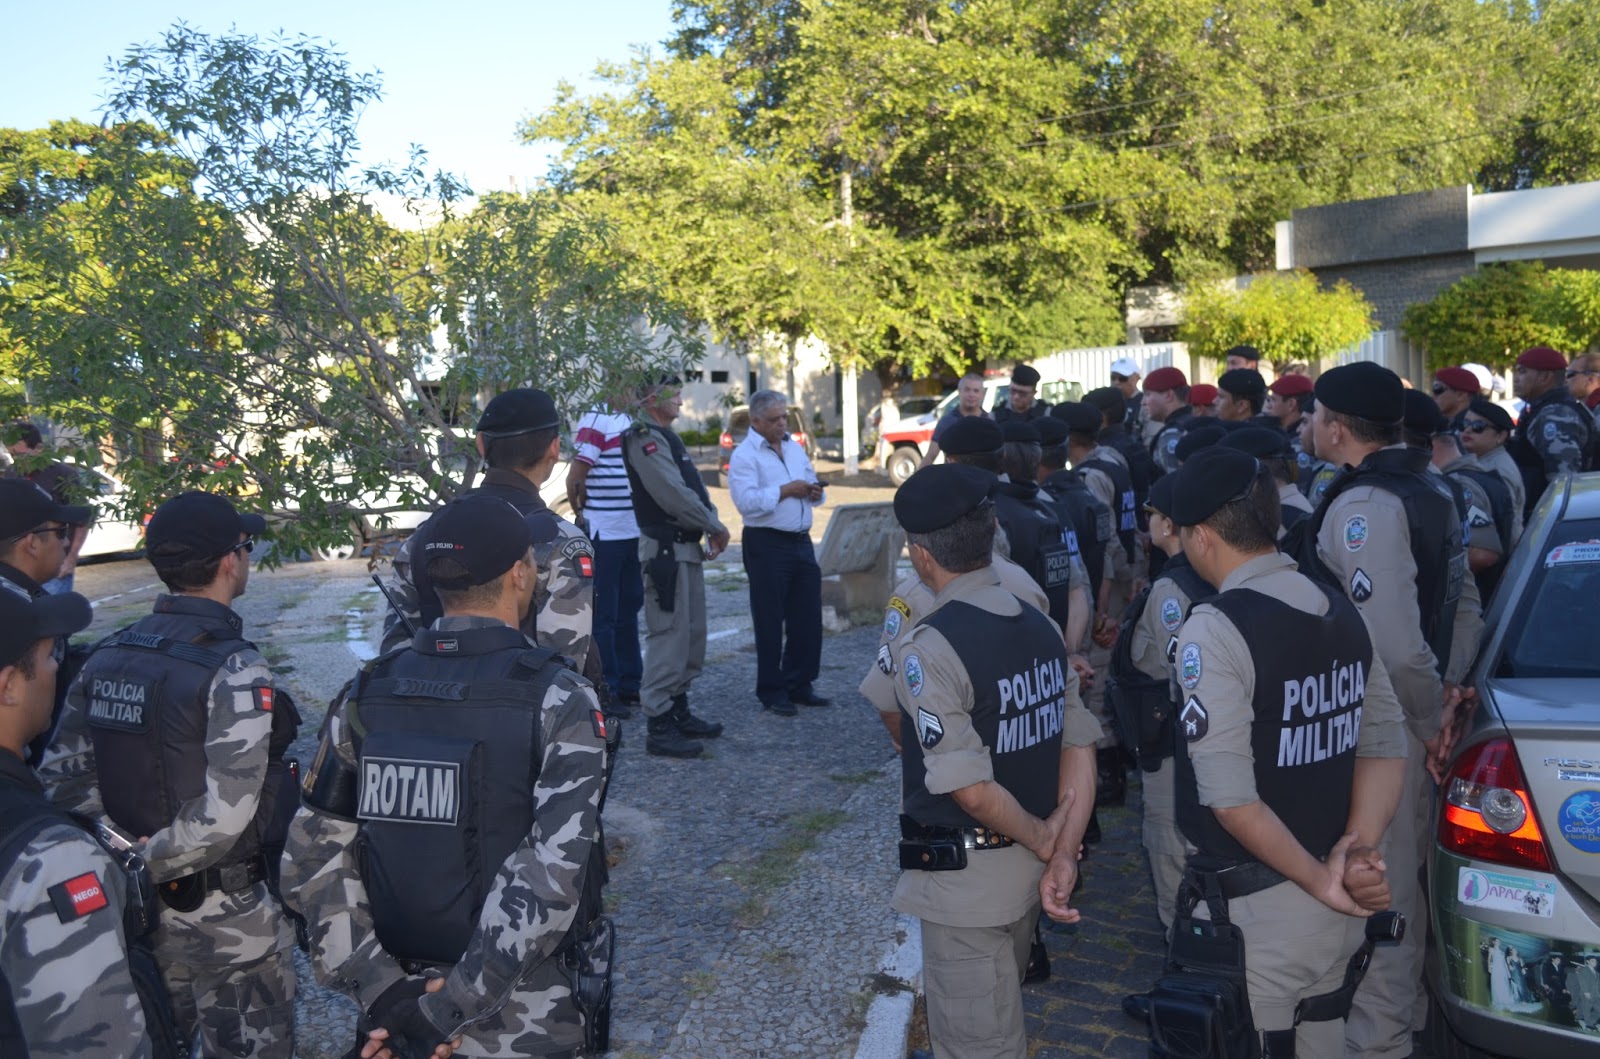 Comandante da PM de Cajazeiras e o secretário de Segurança do Estado (a paisana) passam instruções aos policiais (Foto: Ângelo Lima)